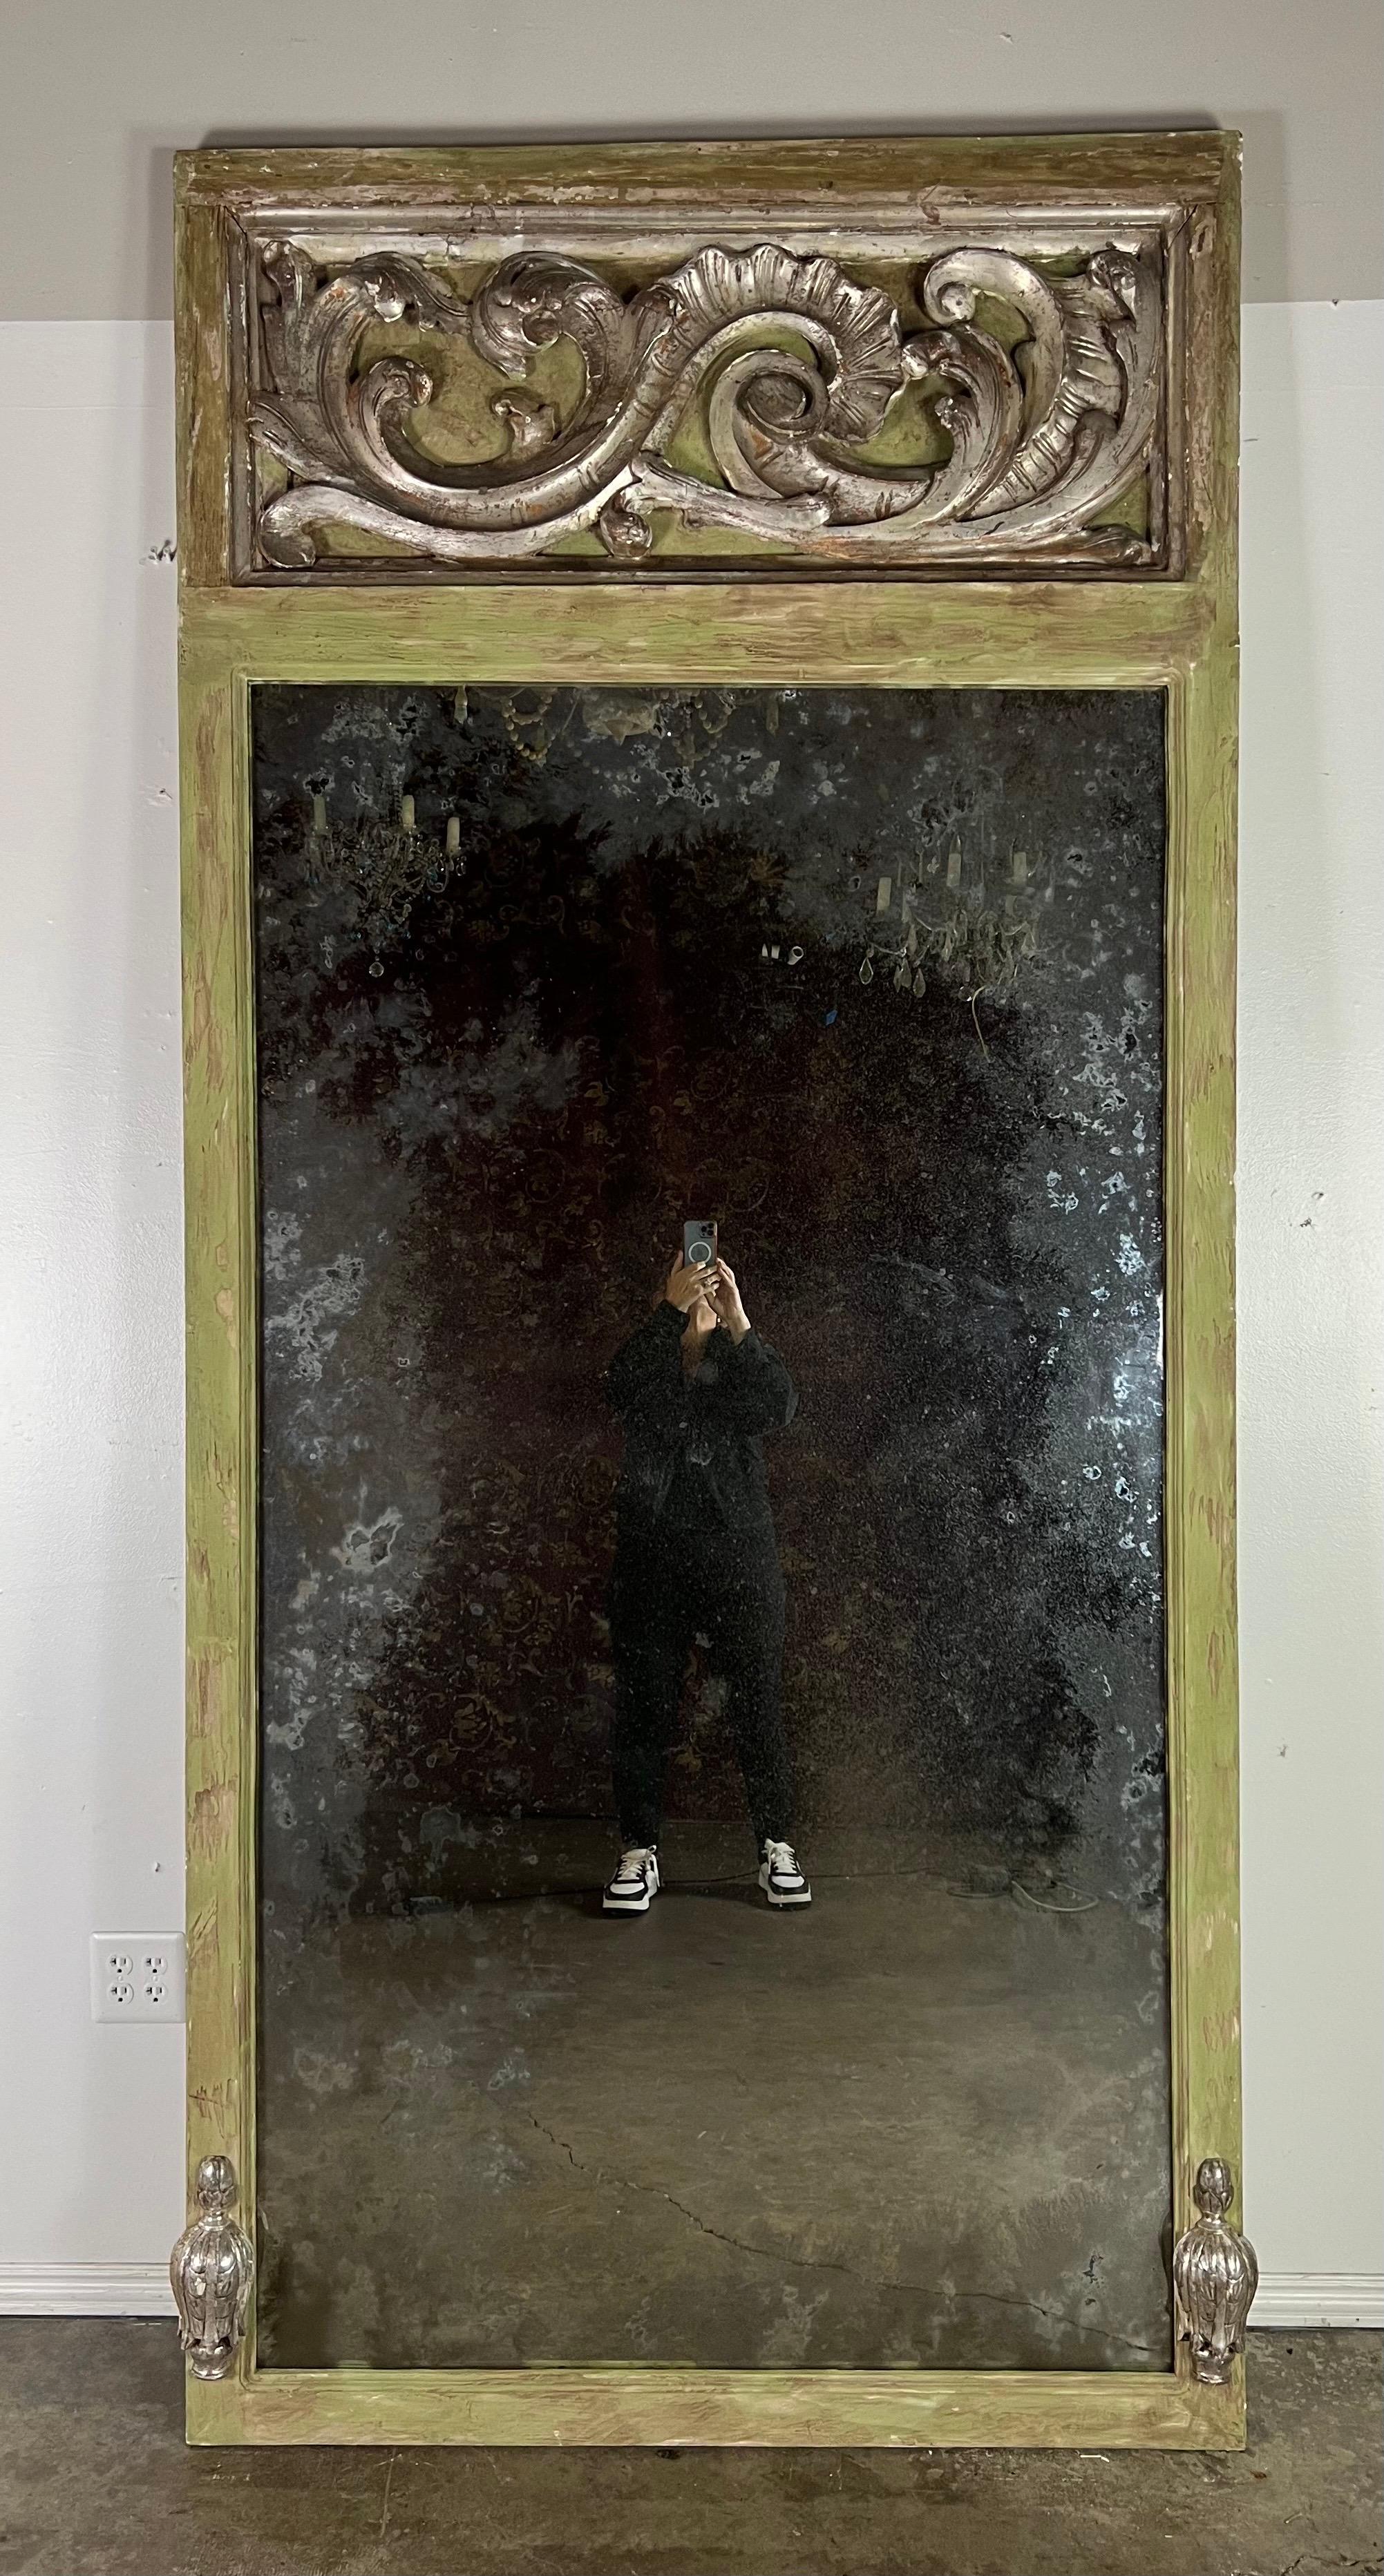 Grand miroir trumeau de style baroque italien avec un cadre peint dans une douce nuance de vert, suggérant un air de tranquillité et de raffinement qui complète magnifiquement le flair baroque de la pièce.

Un miroir trumeau comprend